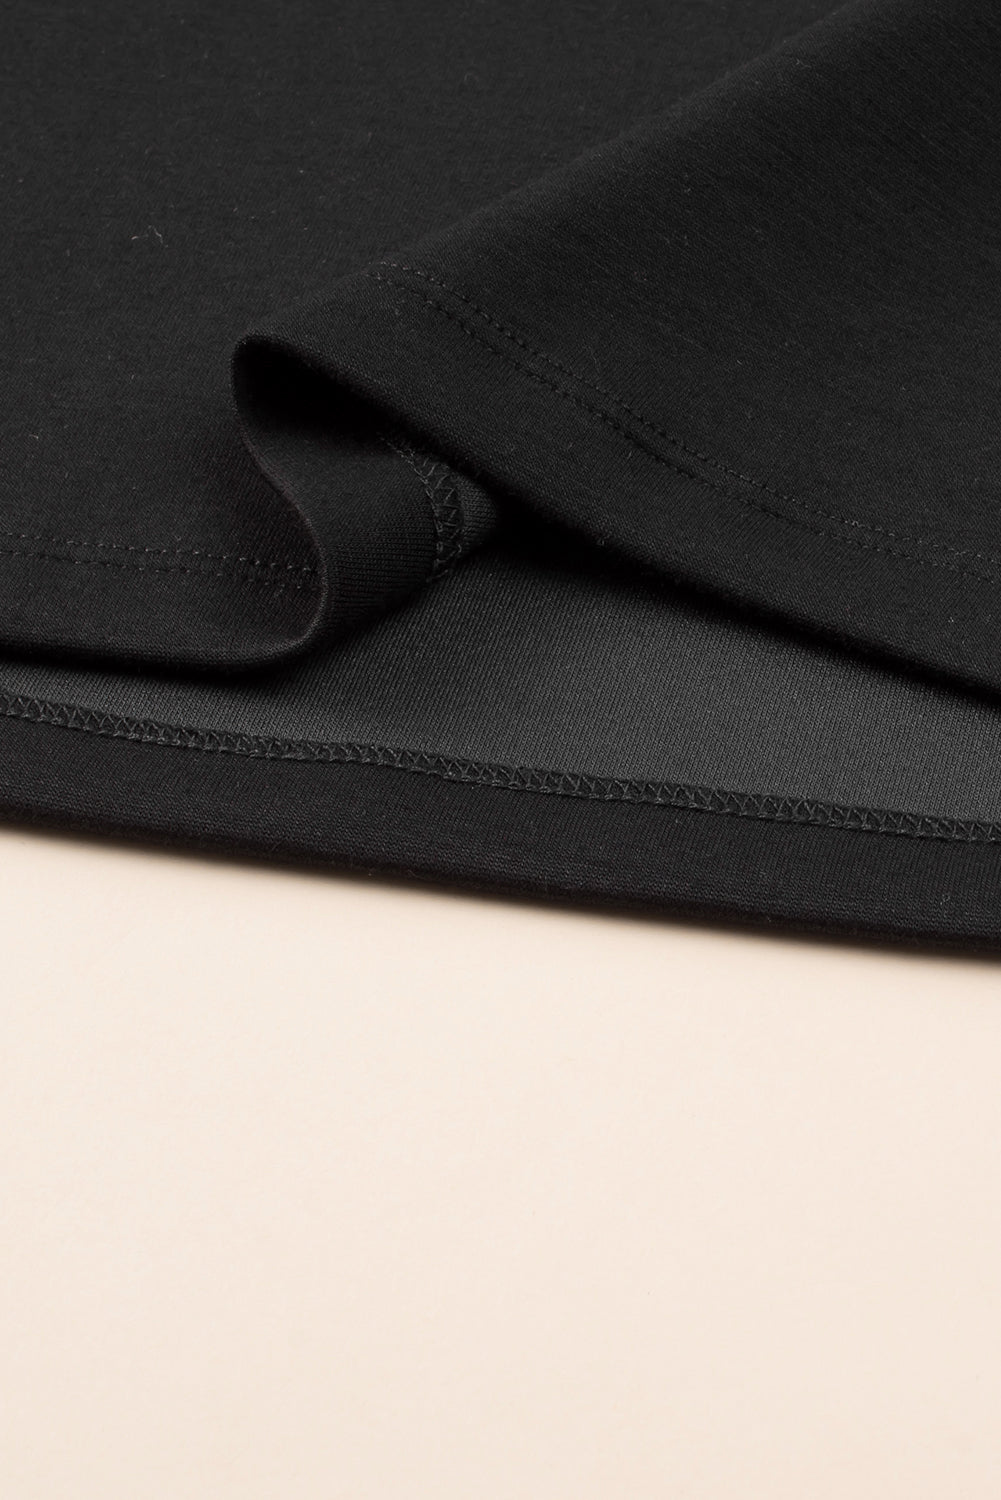 Robe T-shirt Noire Cloutée à Mancherons Grande Taille